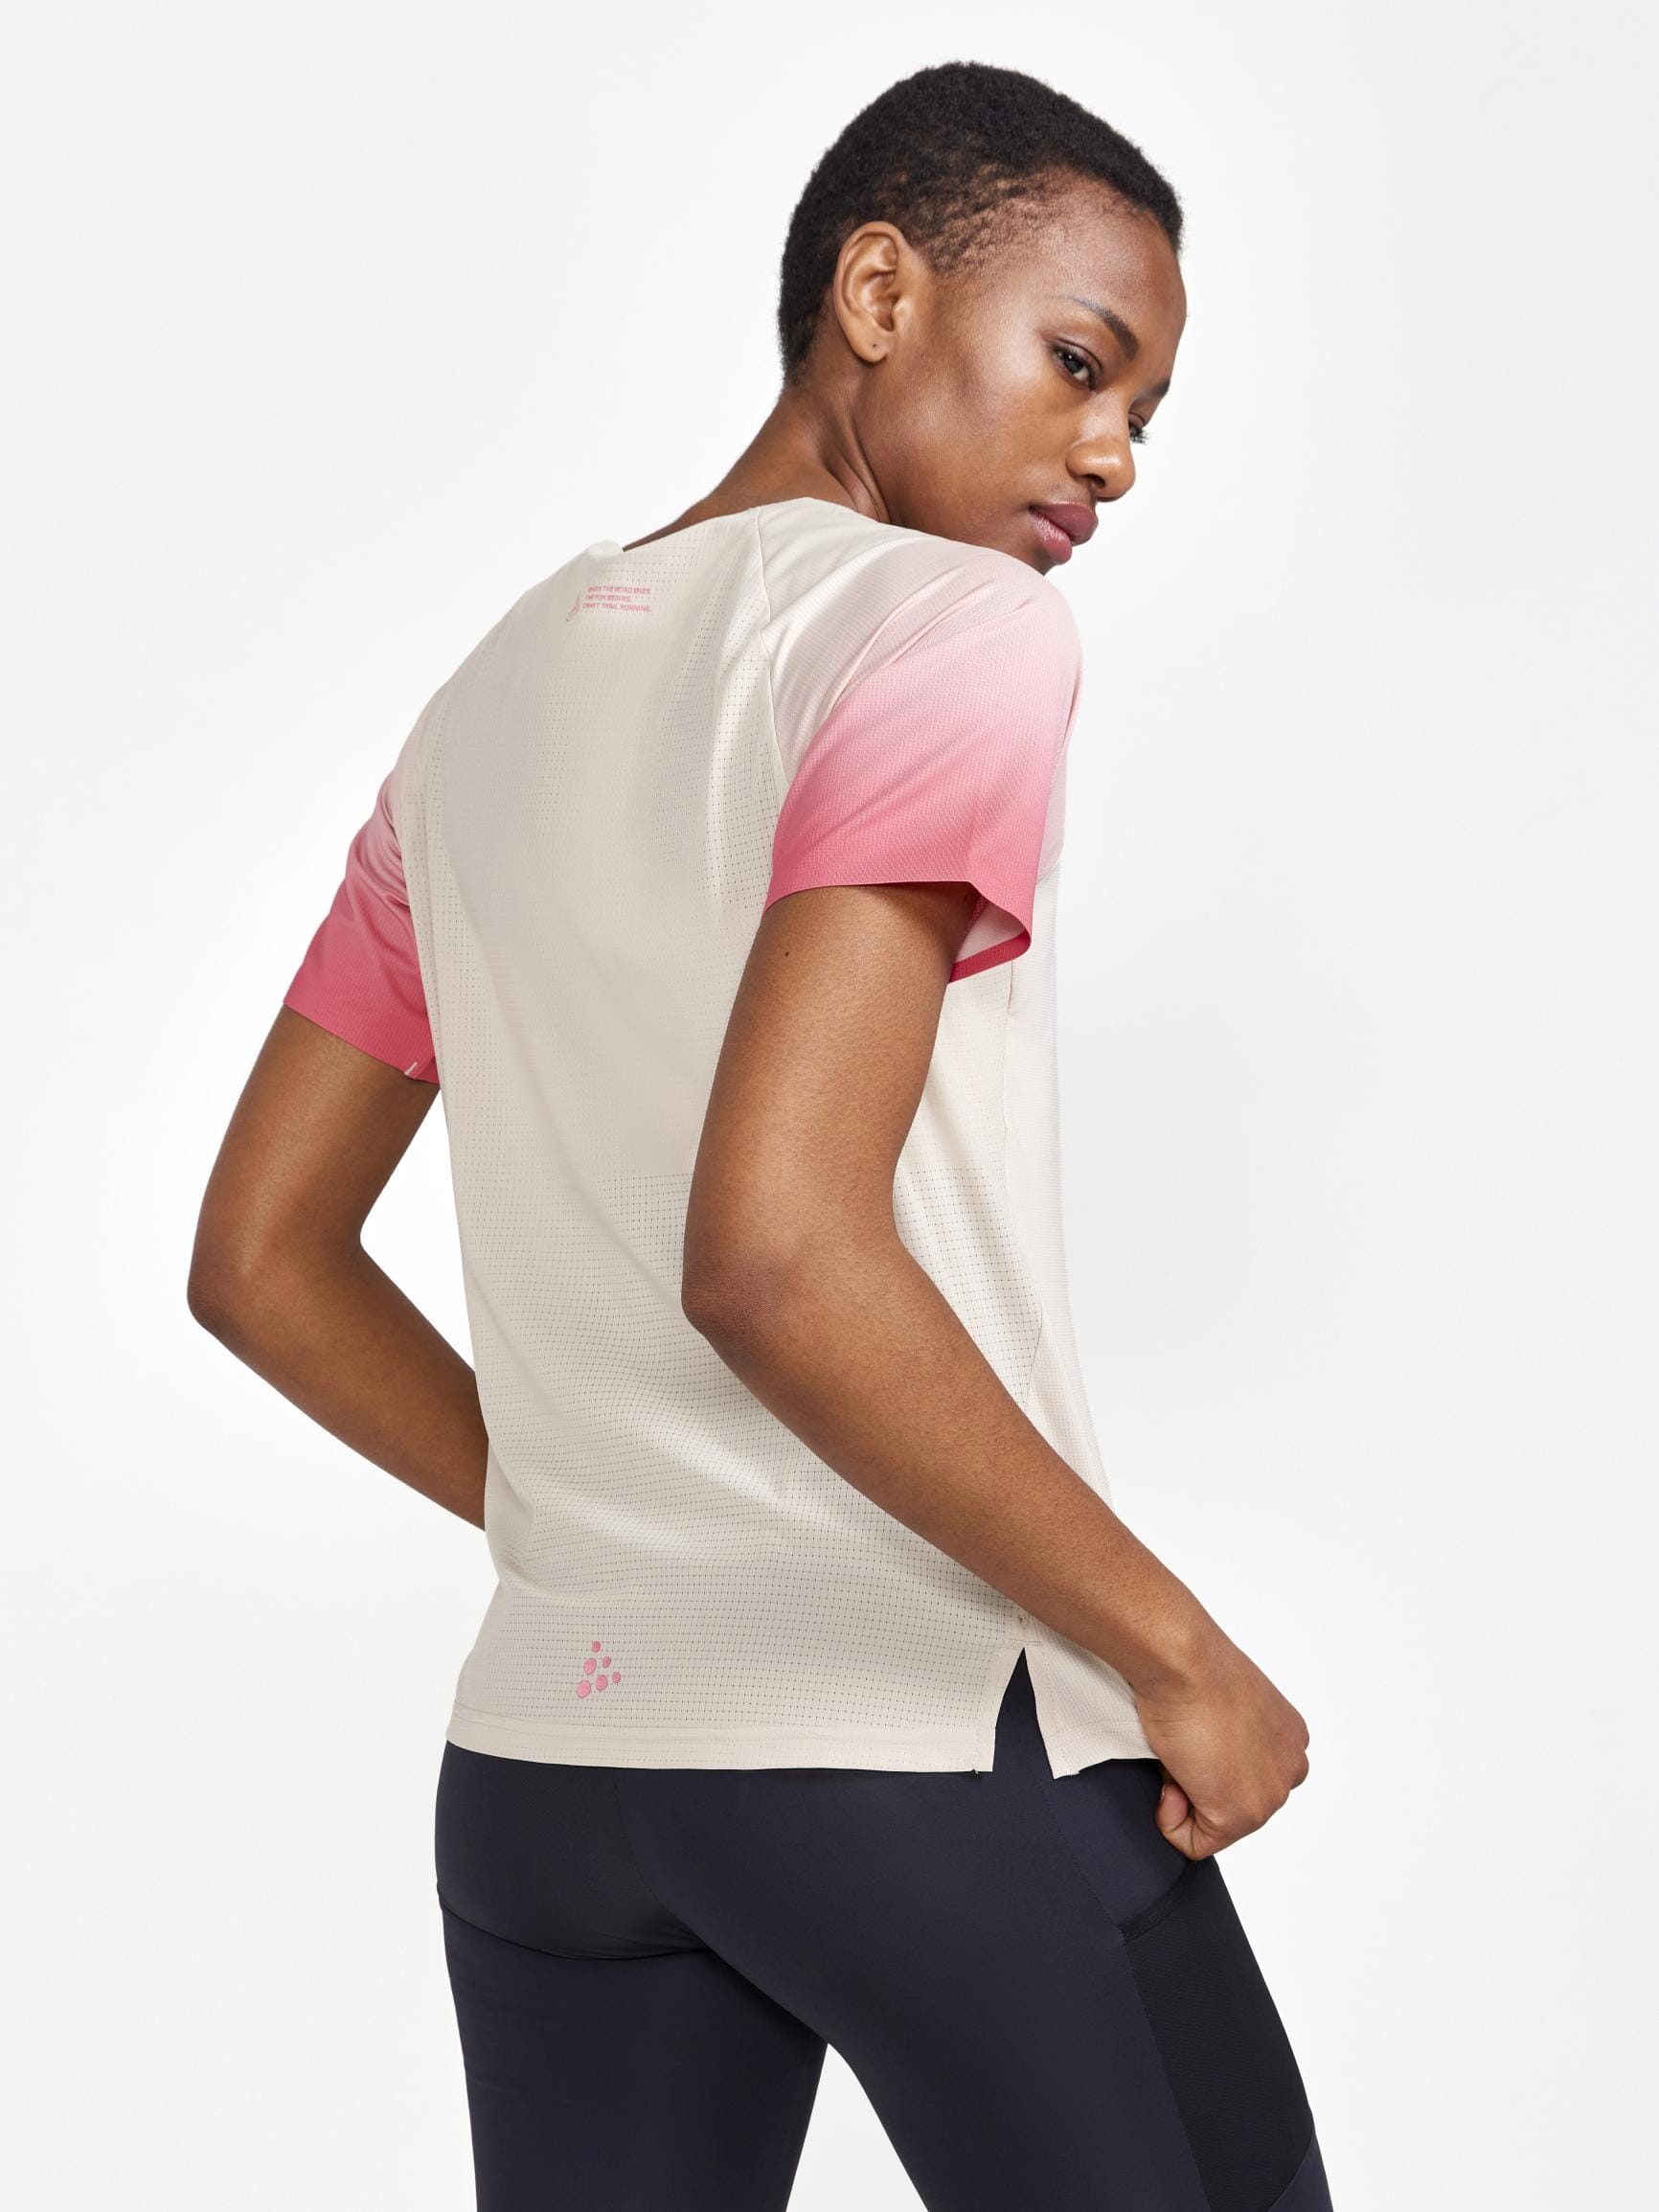 50% OFF,Women Running Sport T Shirt Casual Short Sleeve Soft